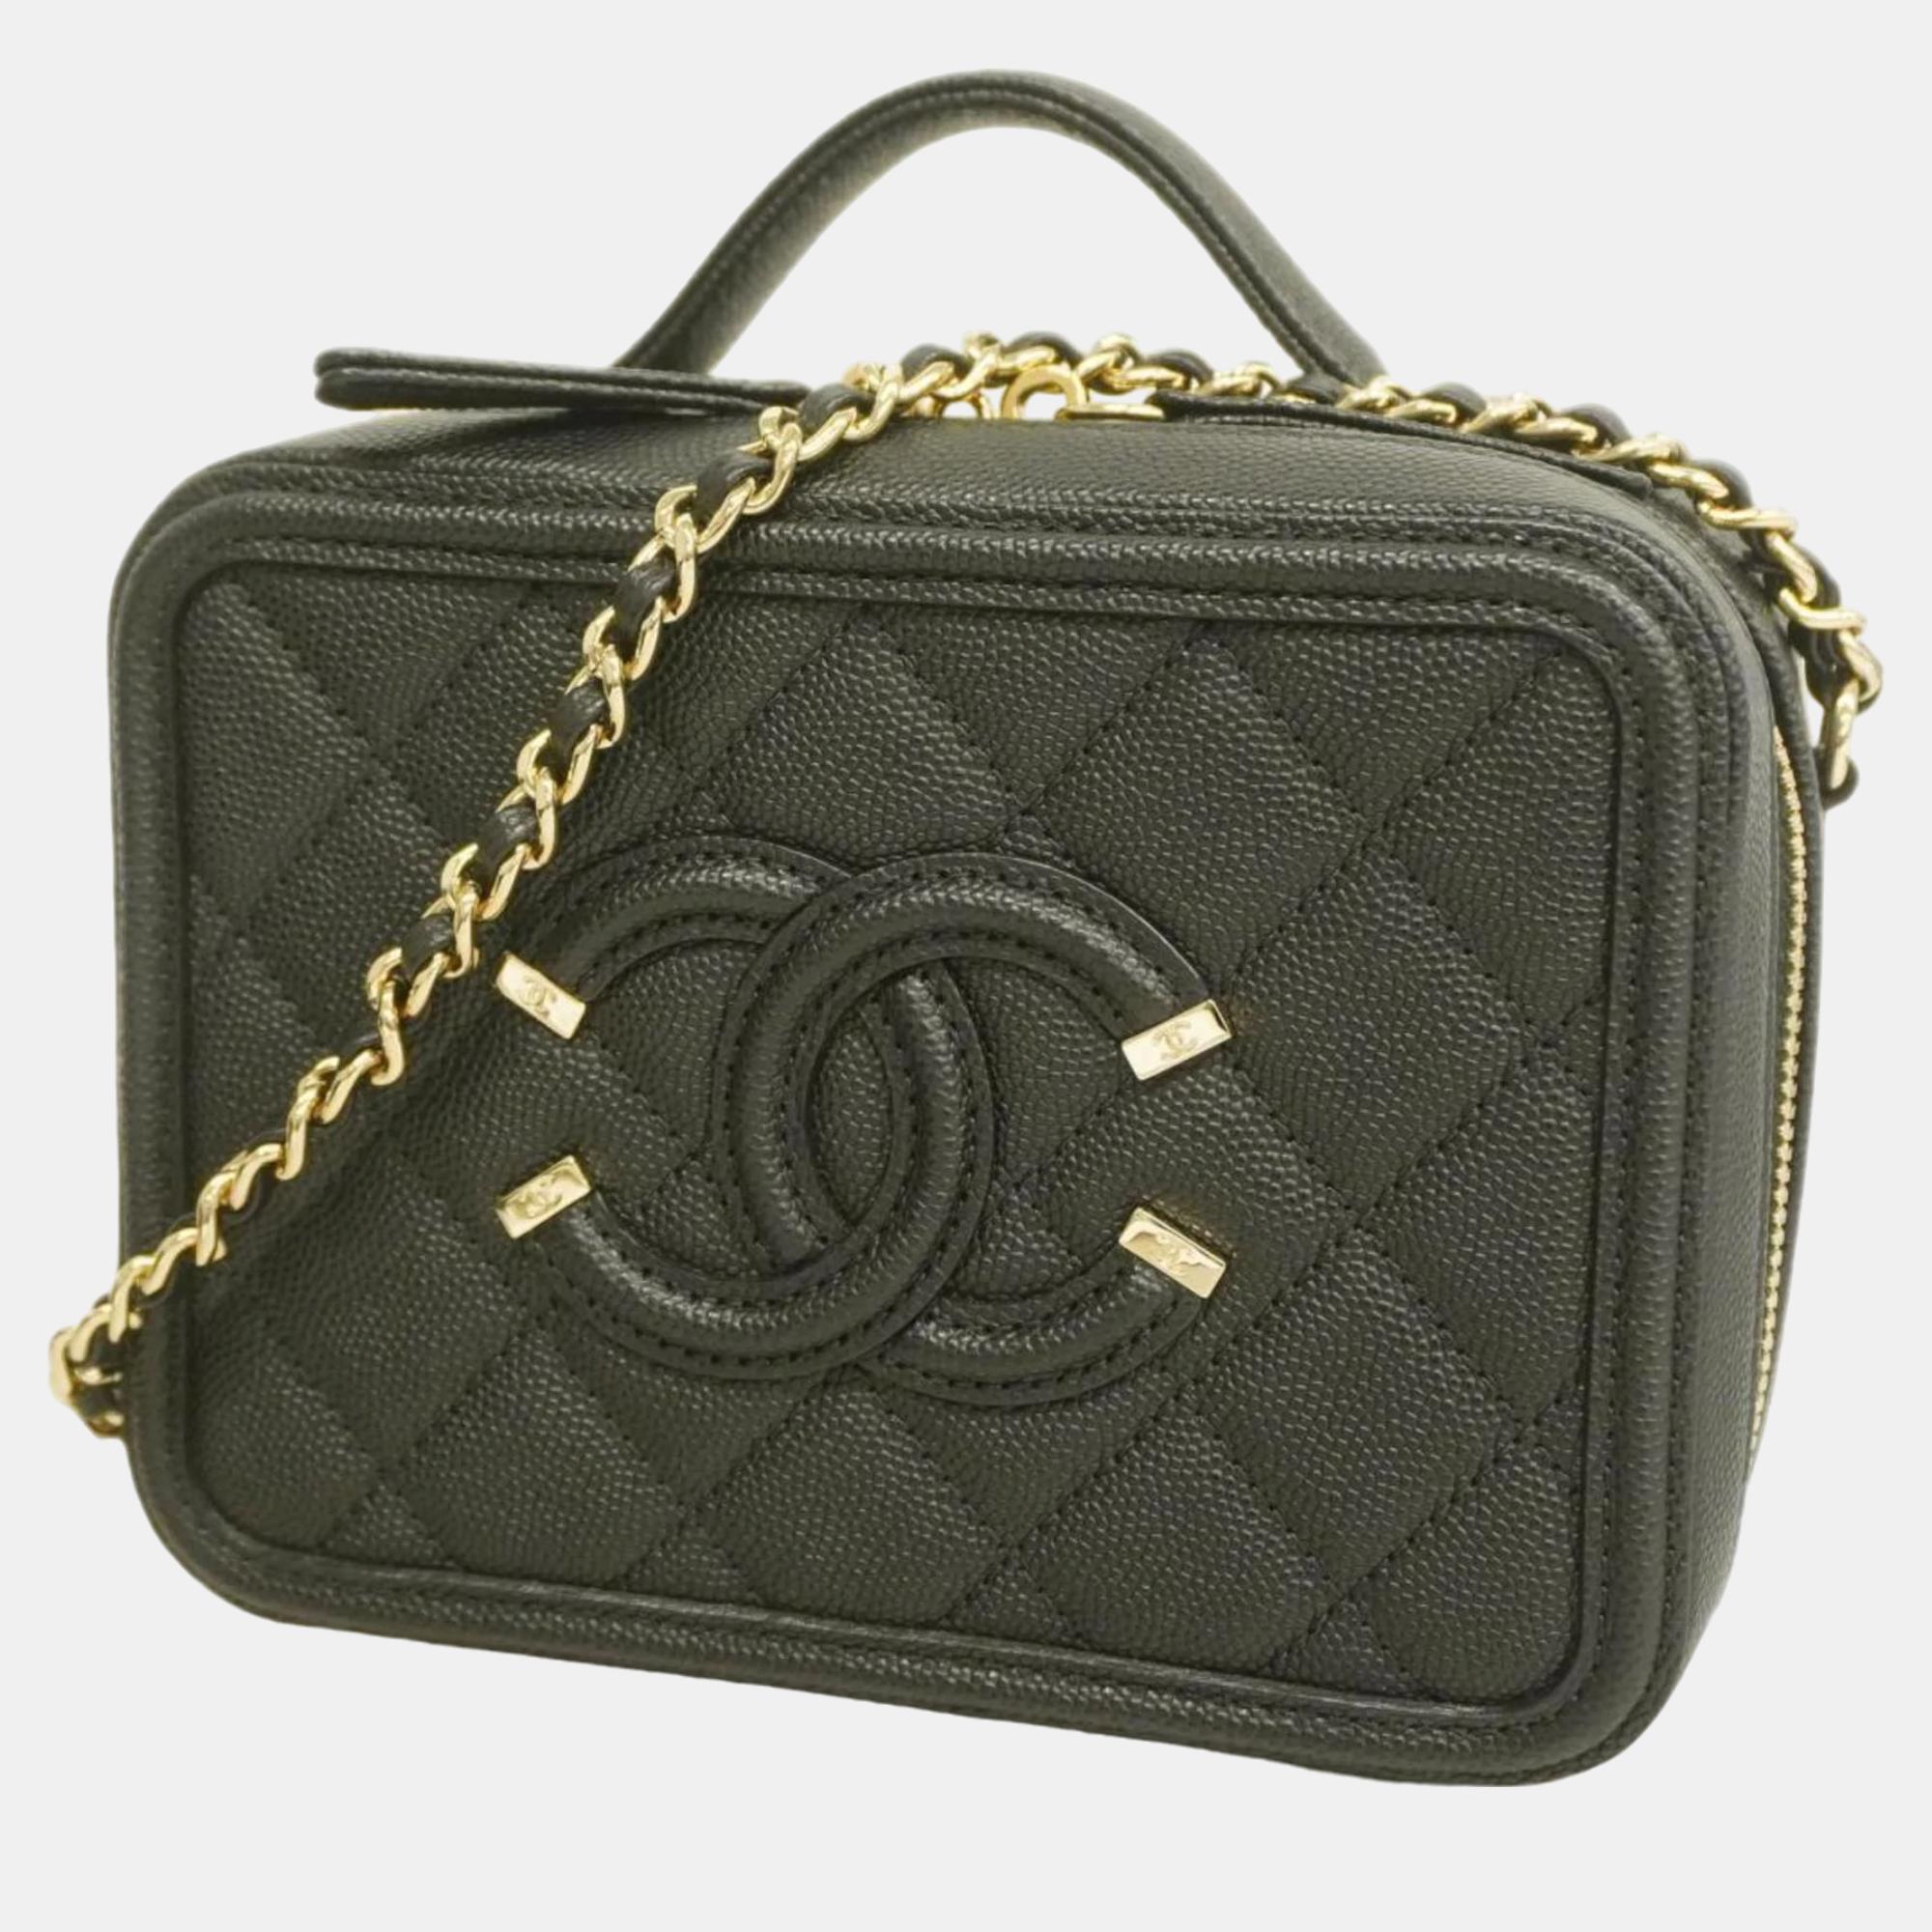 Chanel black leather  filigree shoulder bags